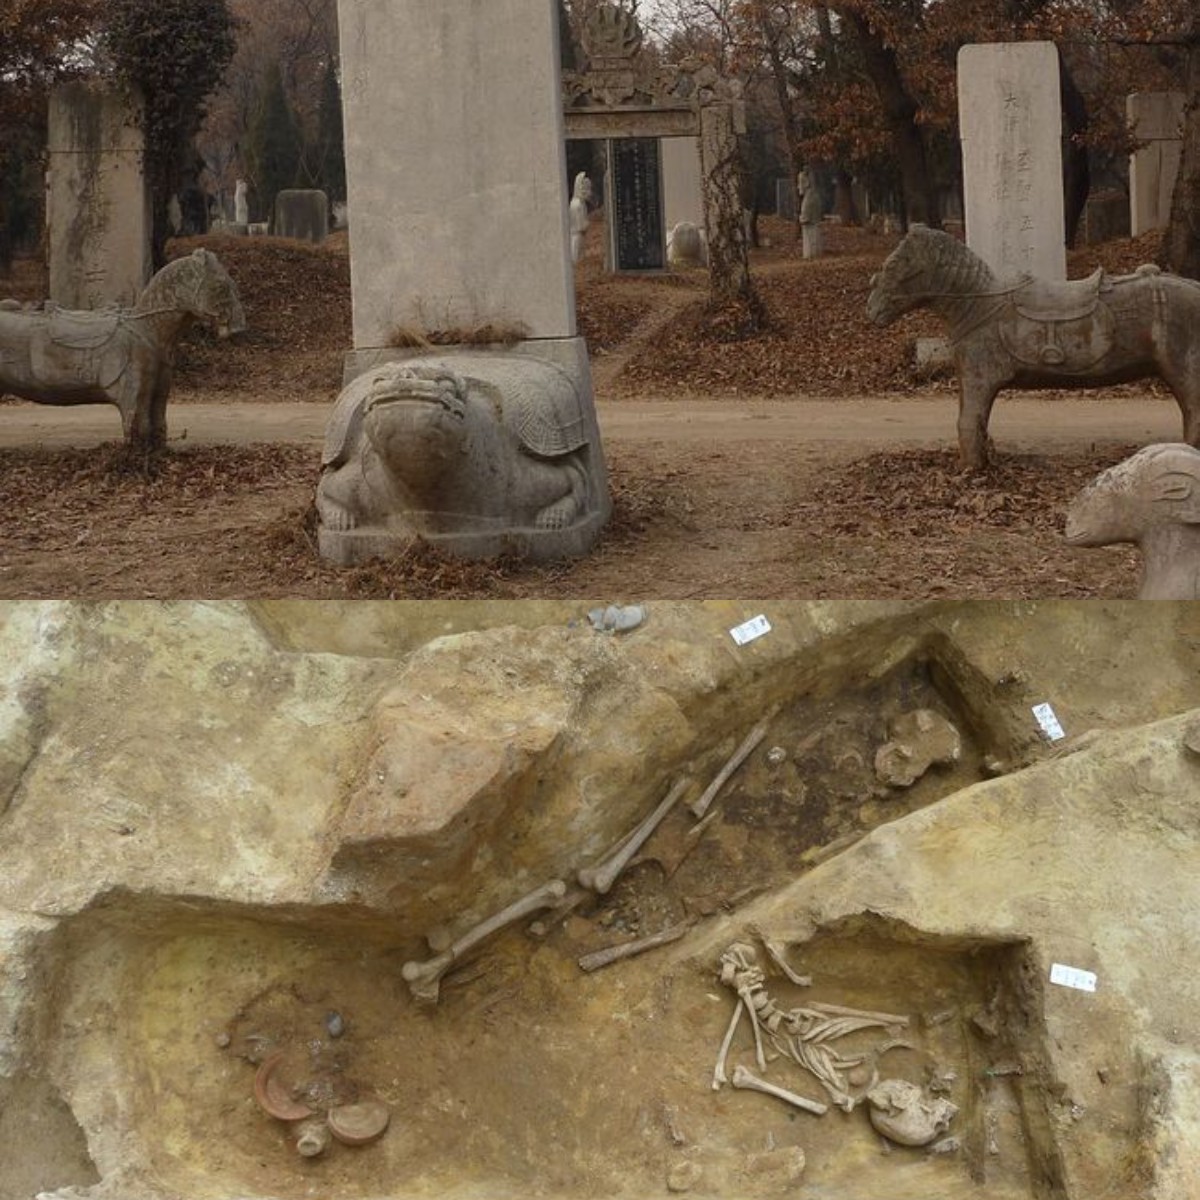 Penemuan Ratusan Kuburan, Memperkenalkan Sejarah Muslim di Spanyol yang Terlupakan!